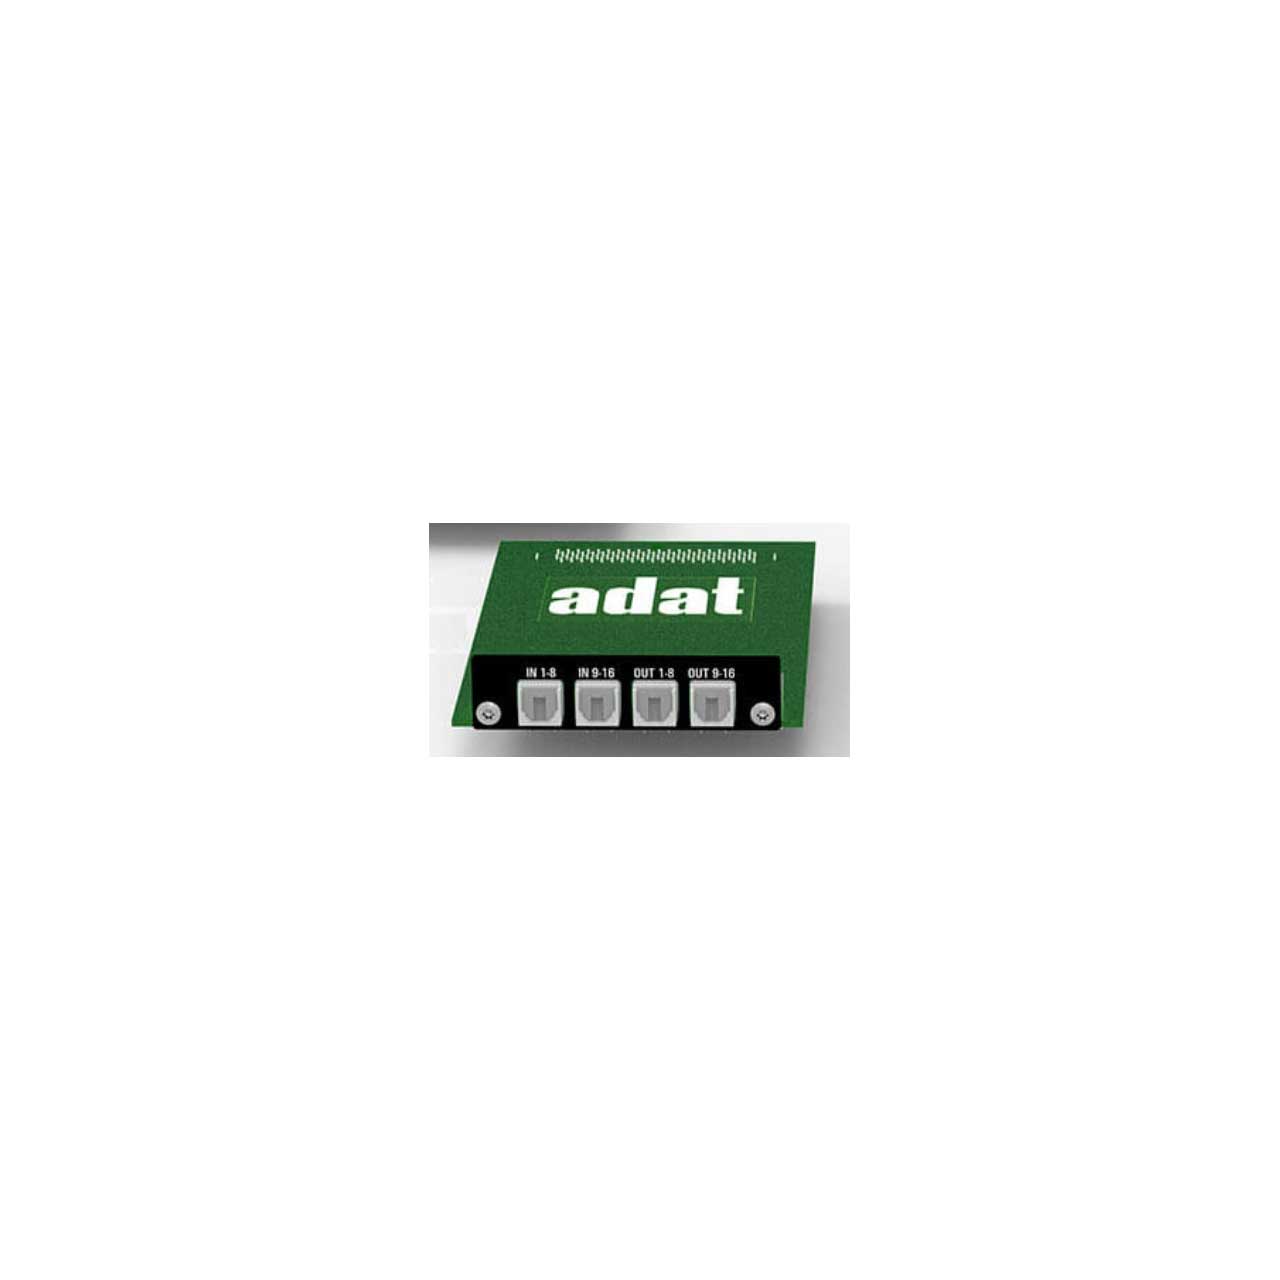 Appsys Pro Audio AUX-ADAT 16 x 16 Channel ADAT Card for Flexiverter Converters AUX-ADAT